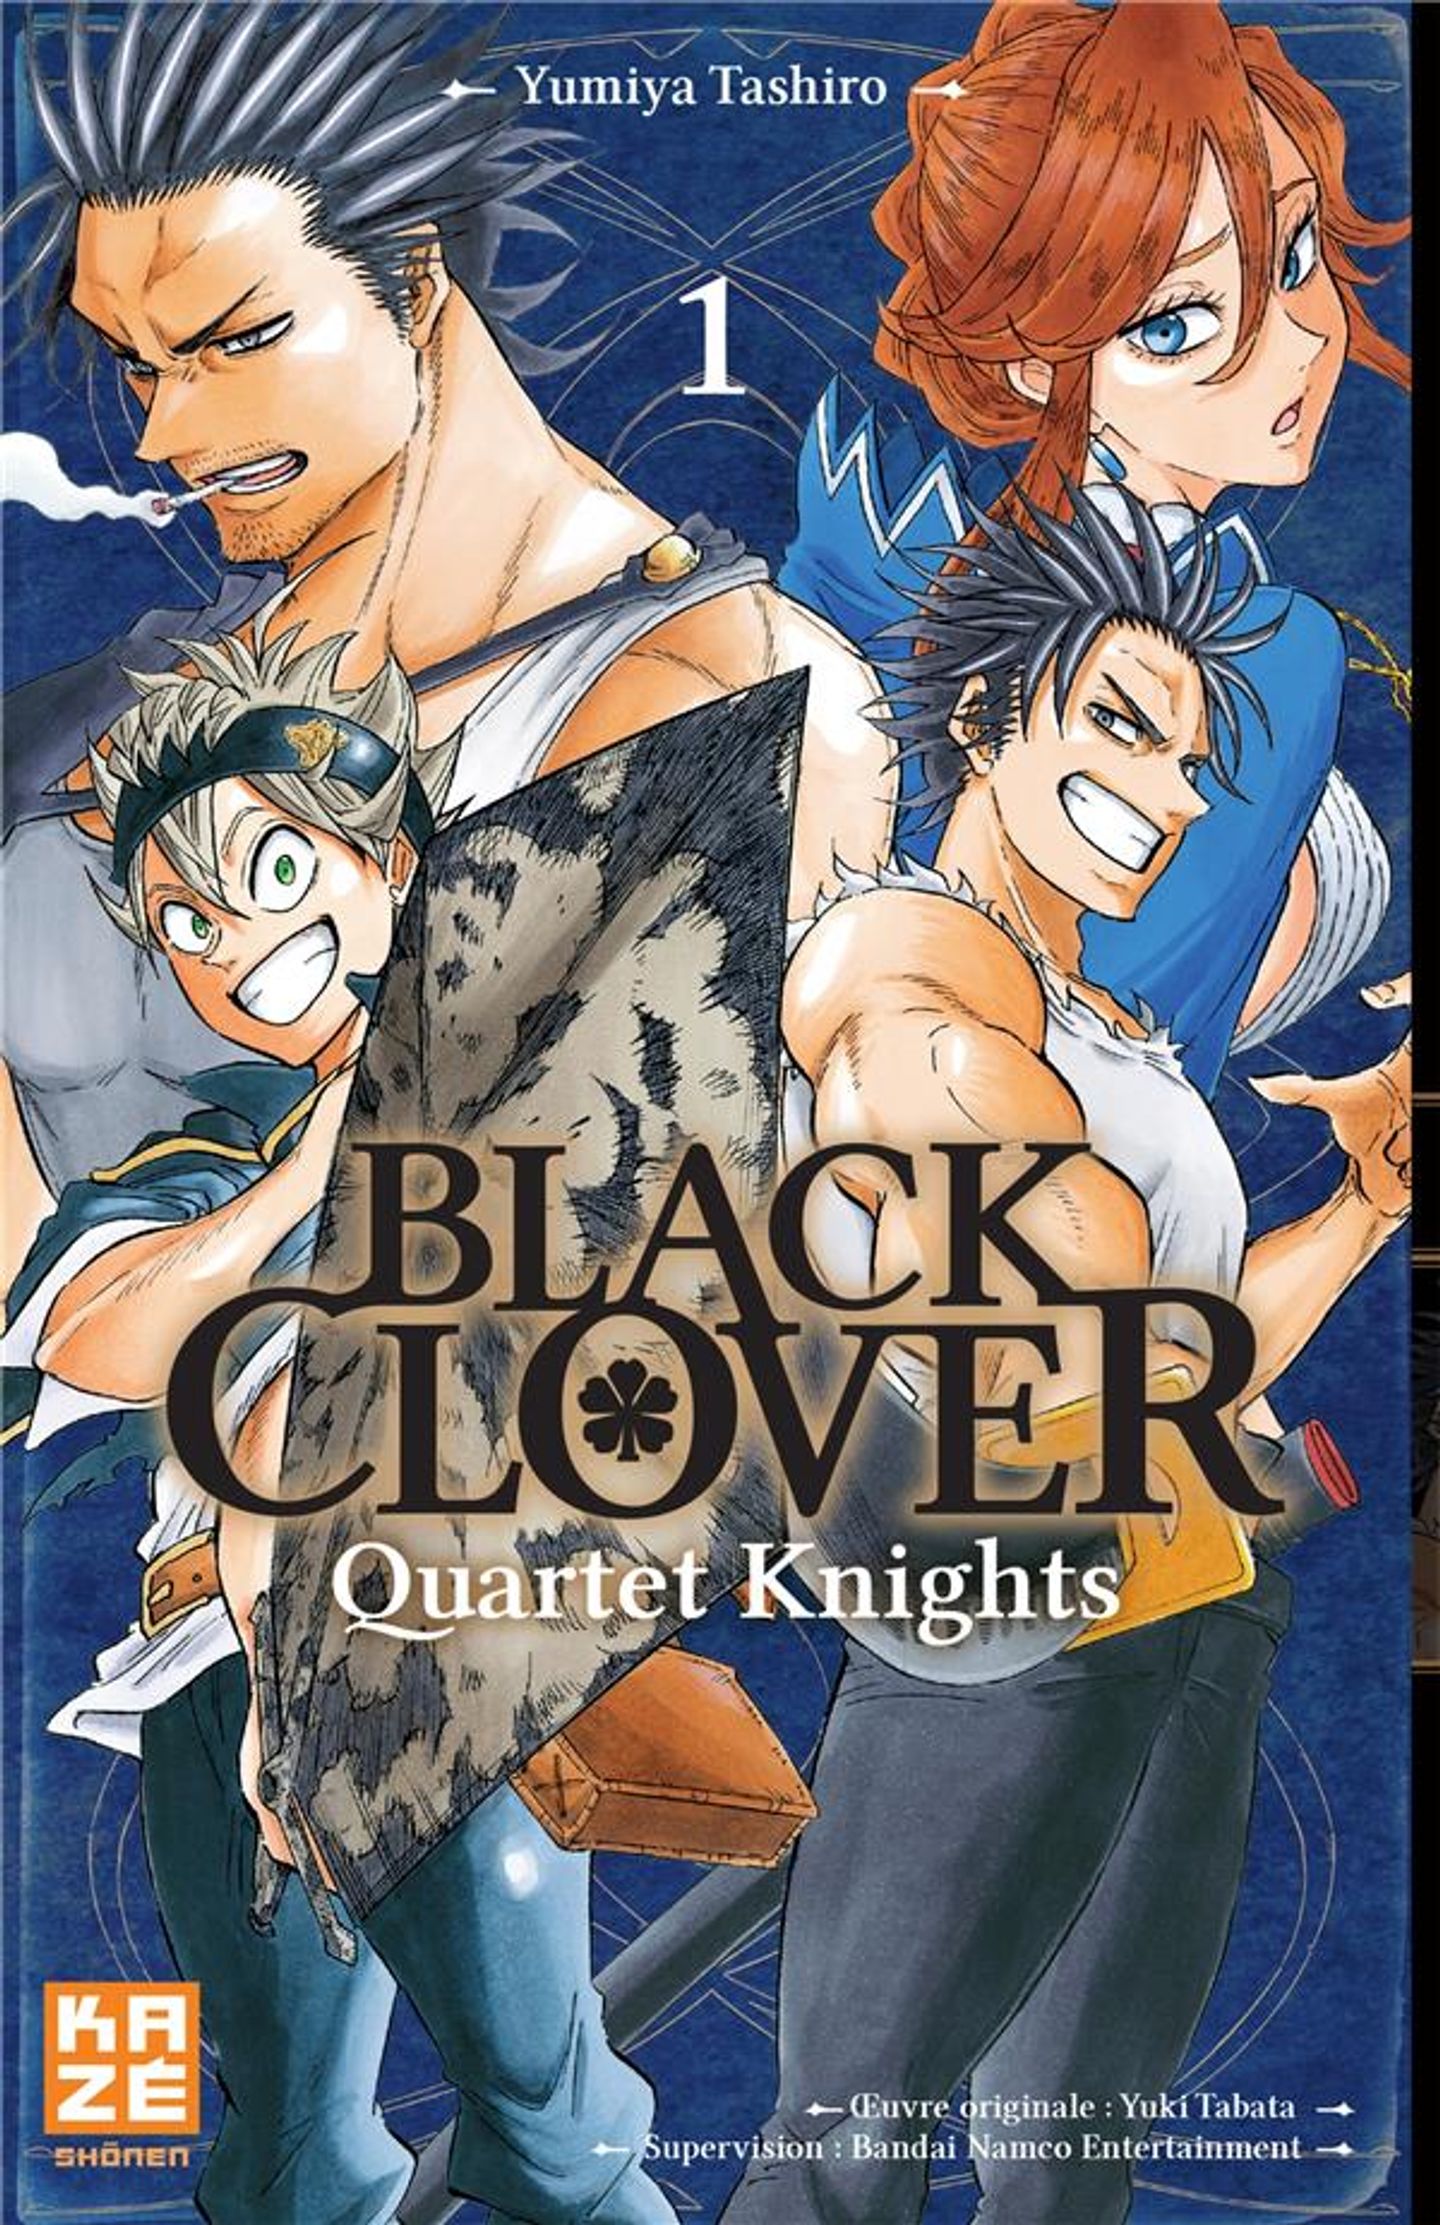 Black Clover Quartet Knights 1